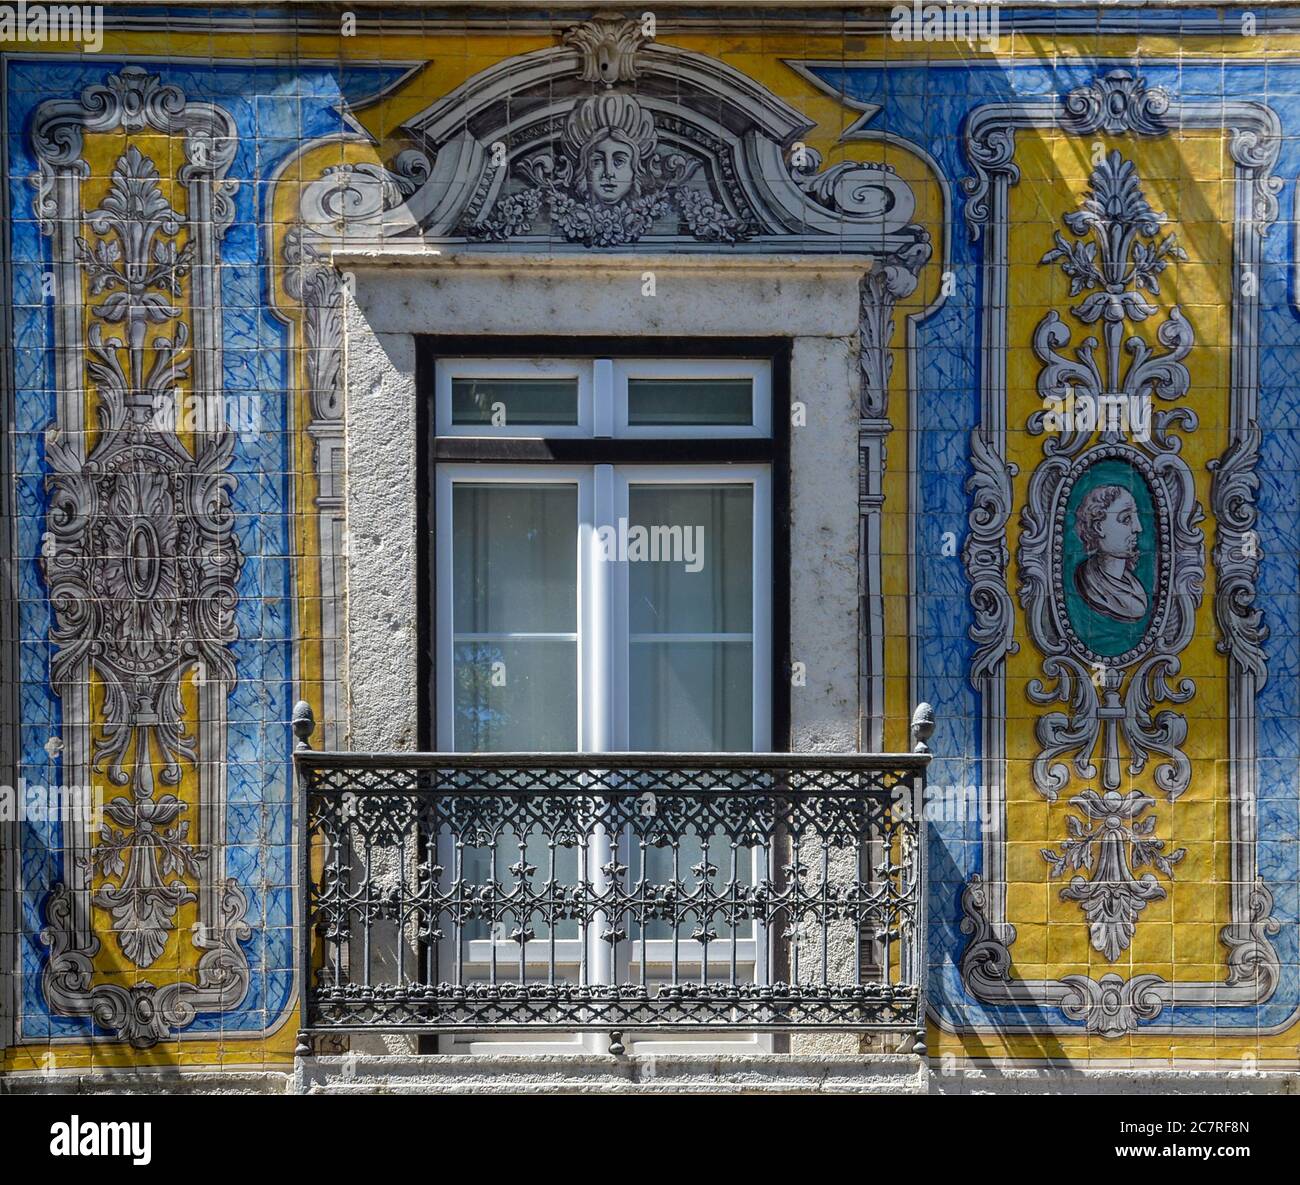 Typisch portugiesisches Fenster mit Zierfliesen, genannt 'Azulejos', aus farbigen Keramikfliesen, in Lissabon, Portugal Stockfoto